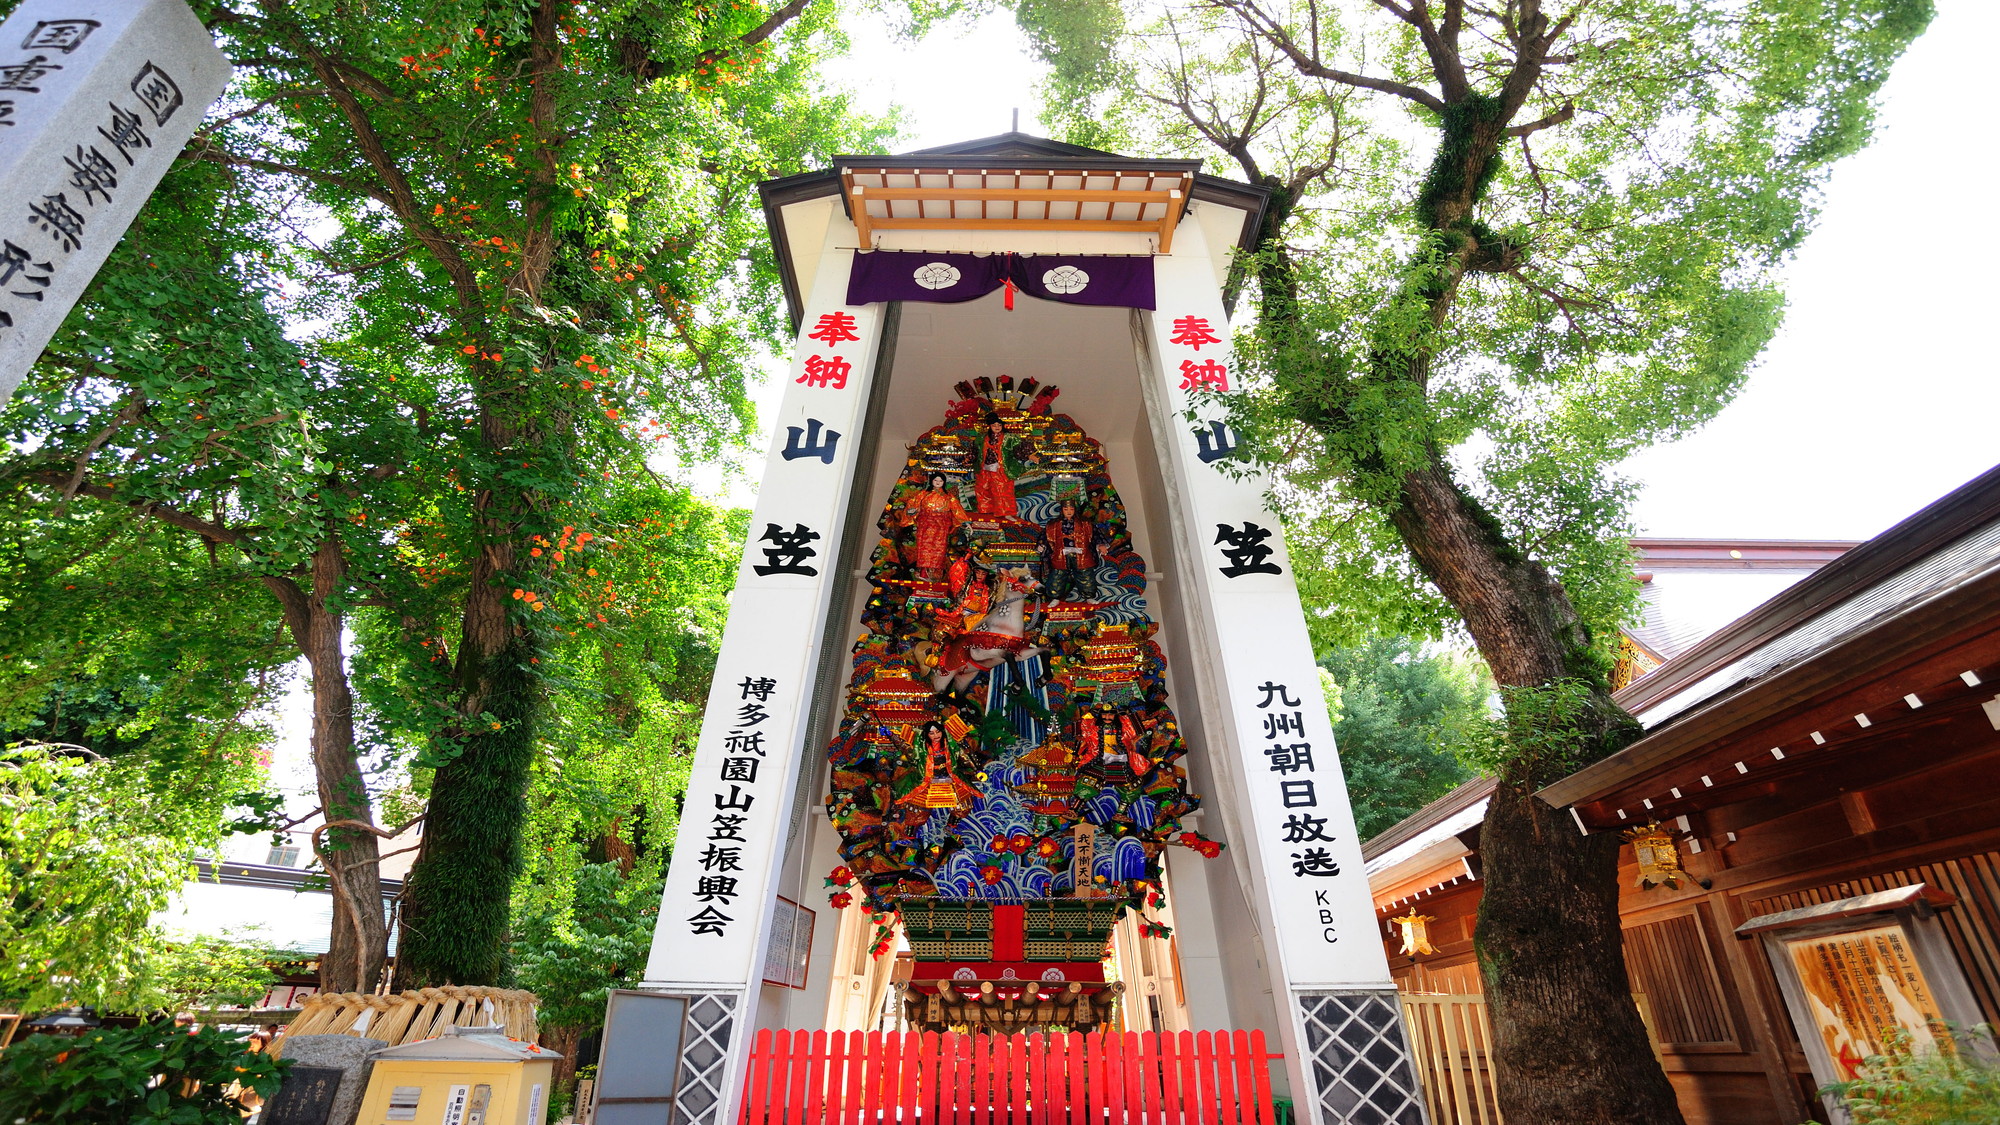 飾り山 中洲のお祭り「山笠」の象徴。櫛田神社では1年を通してみることが出来ます。